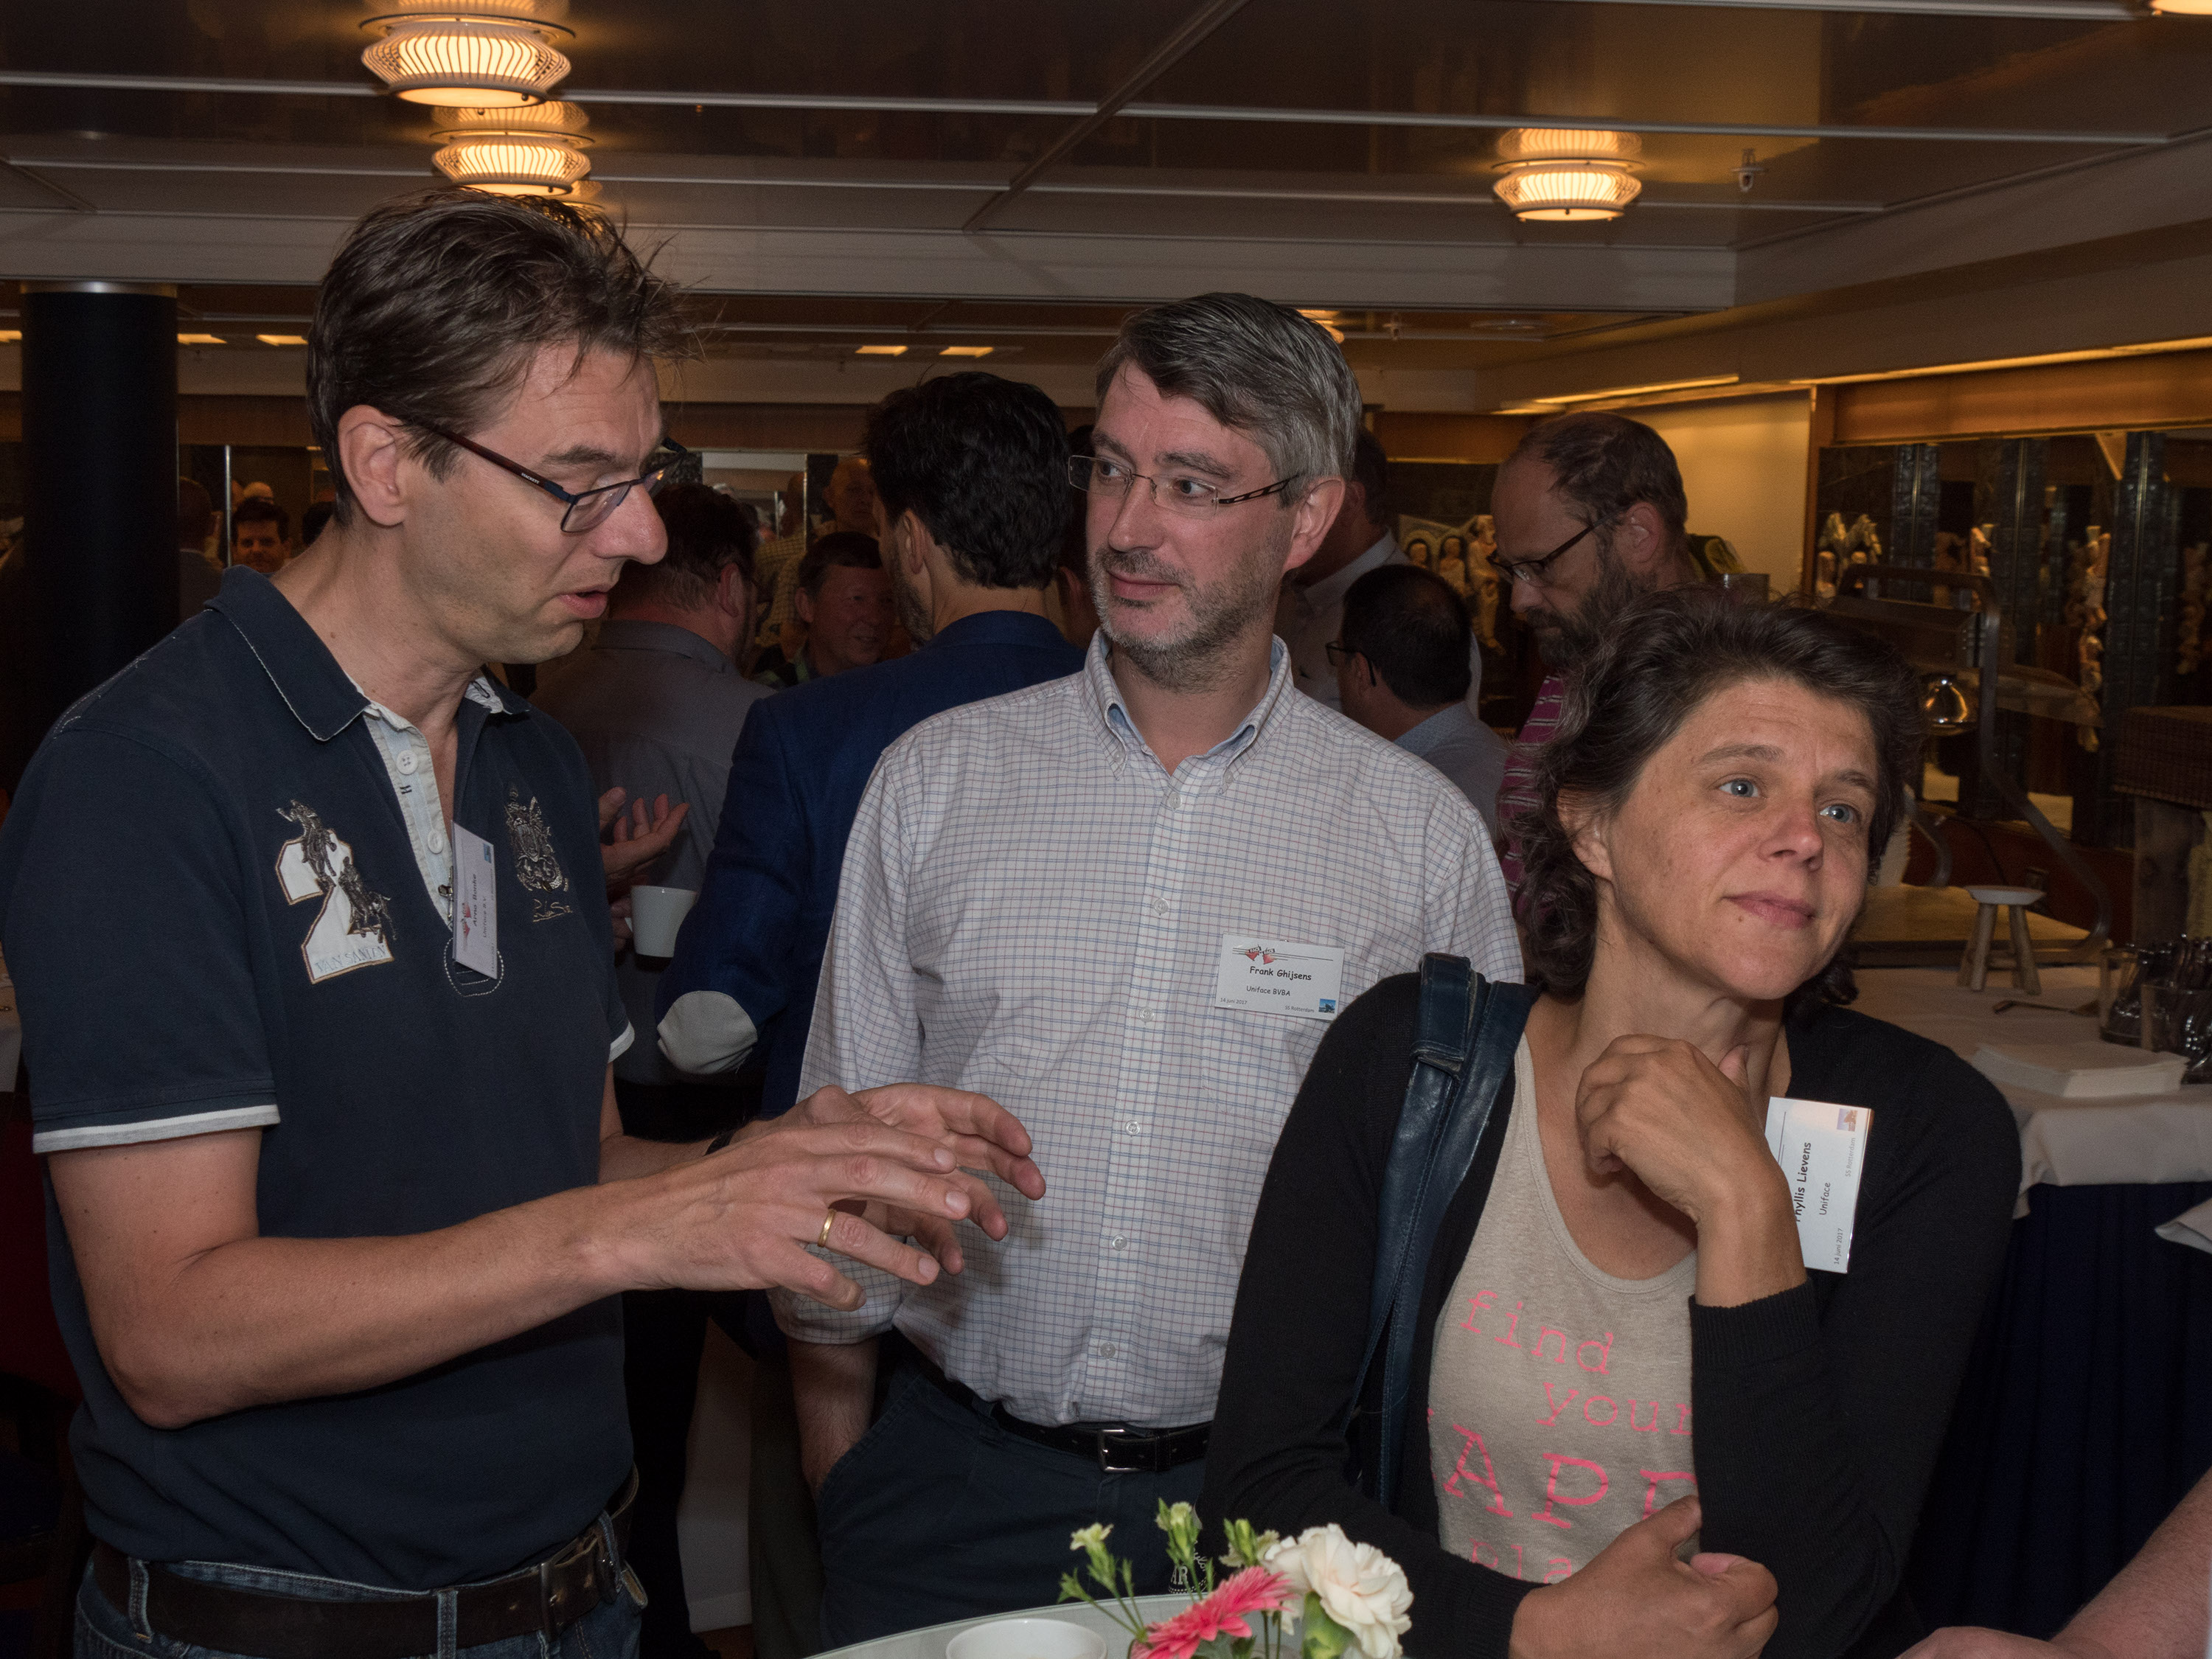 Uniface gebruikersbijeenkomst juni 2017 op de SS Rotterdam